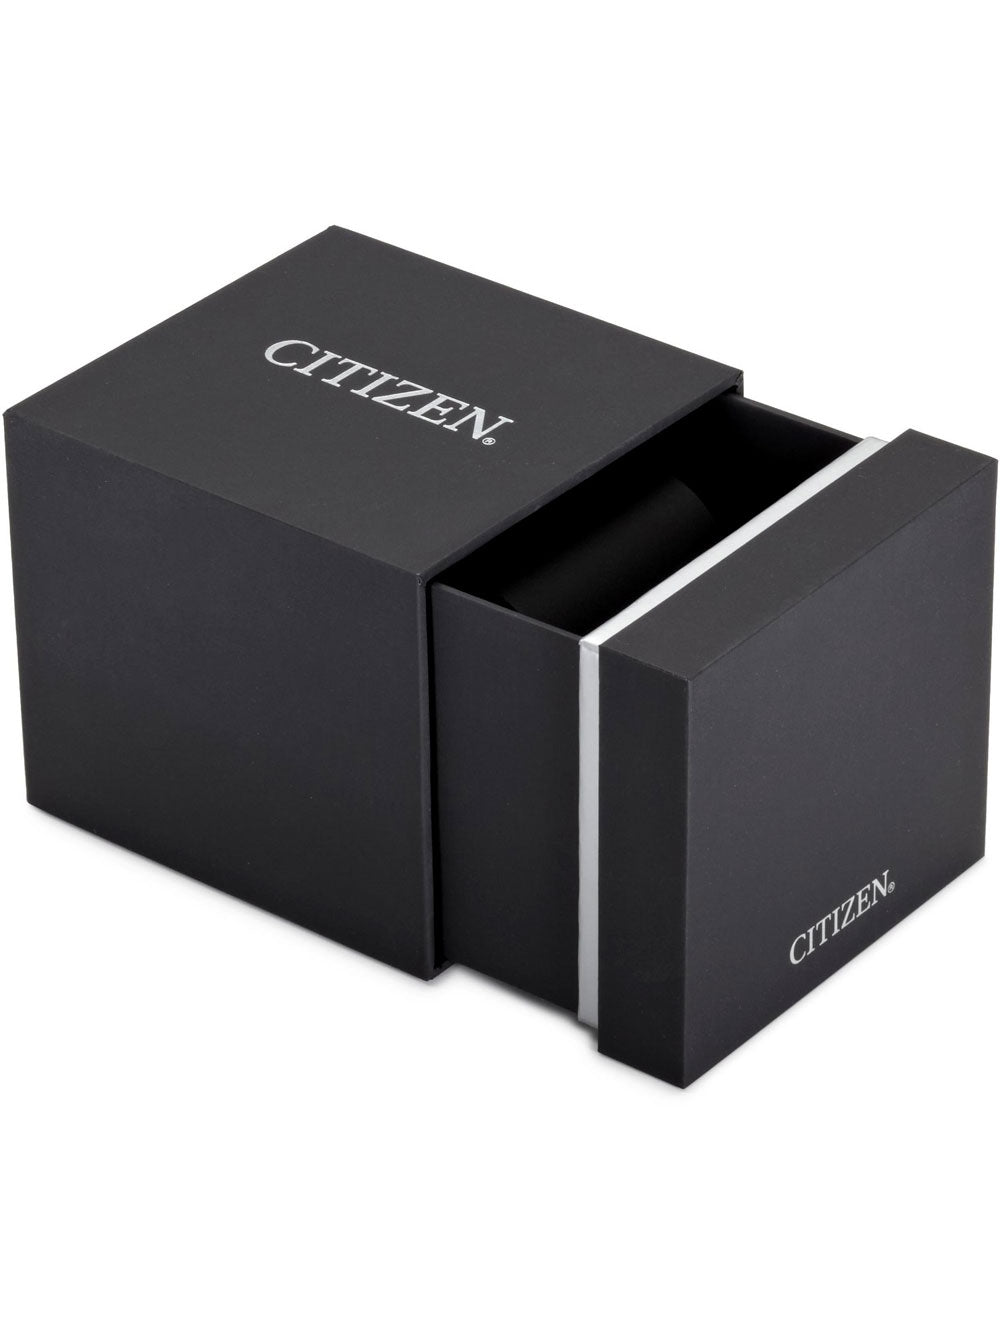 Citizen Eco Drive CC9008-84E GPS gentlemen 45mm 10ATM